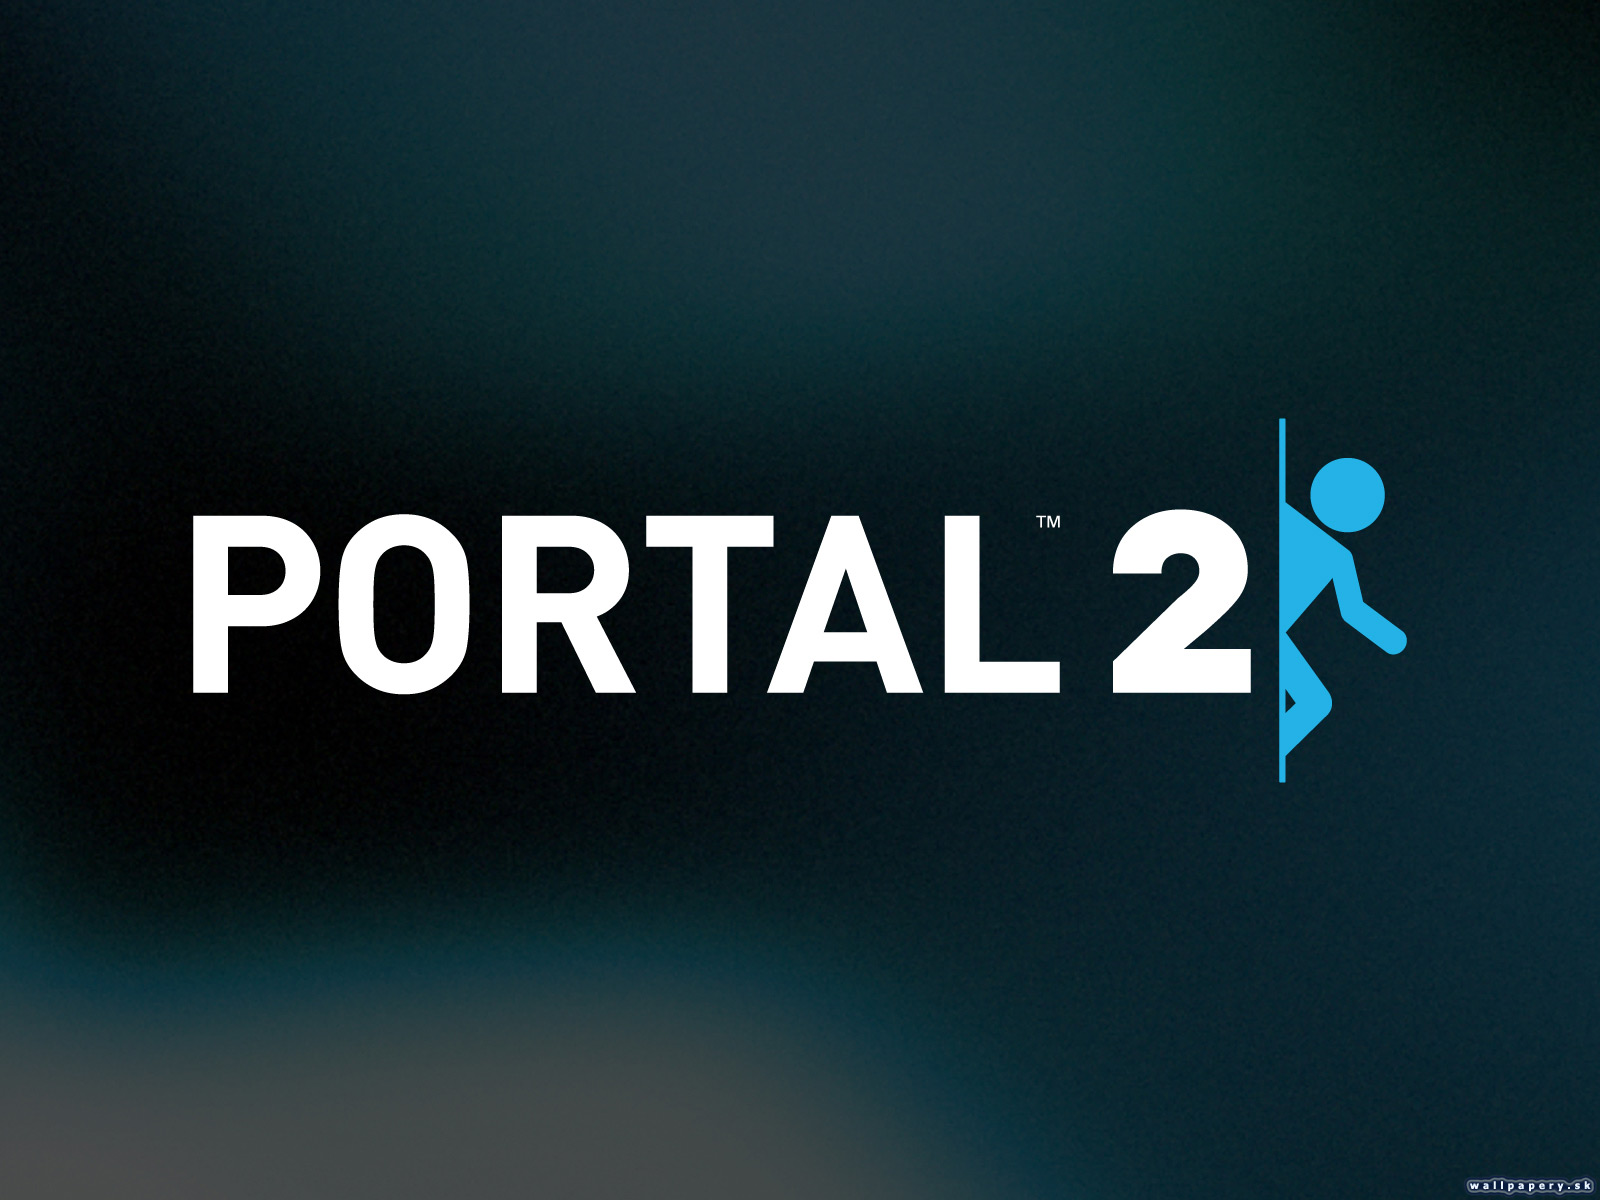 Portal 2 - wallpaper 2